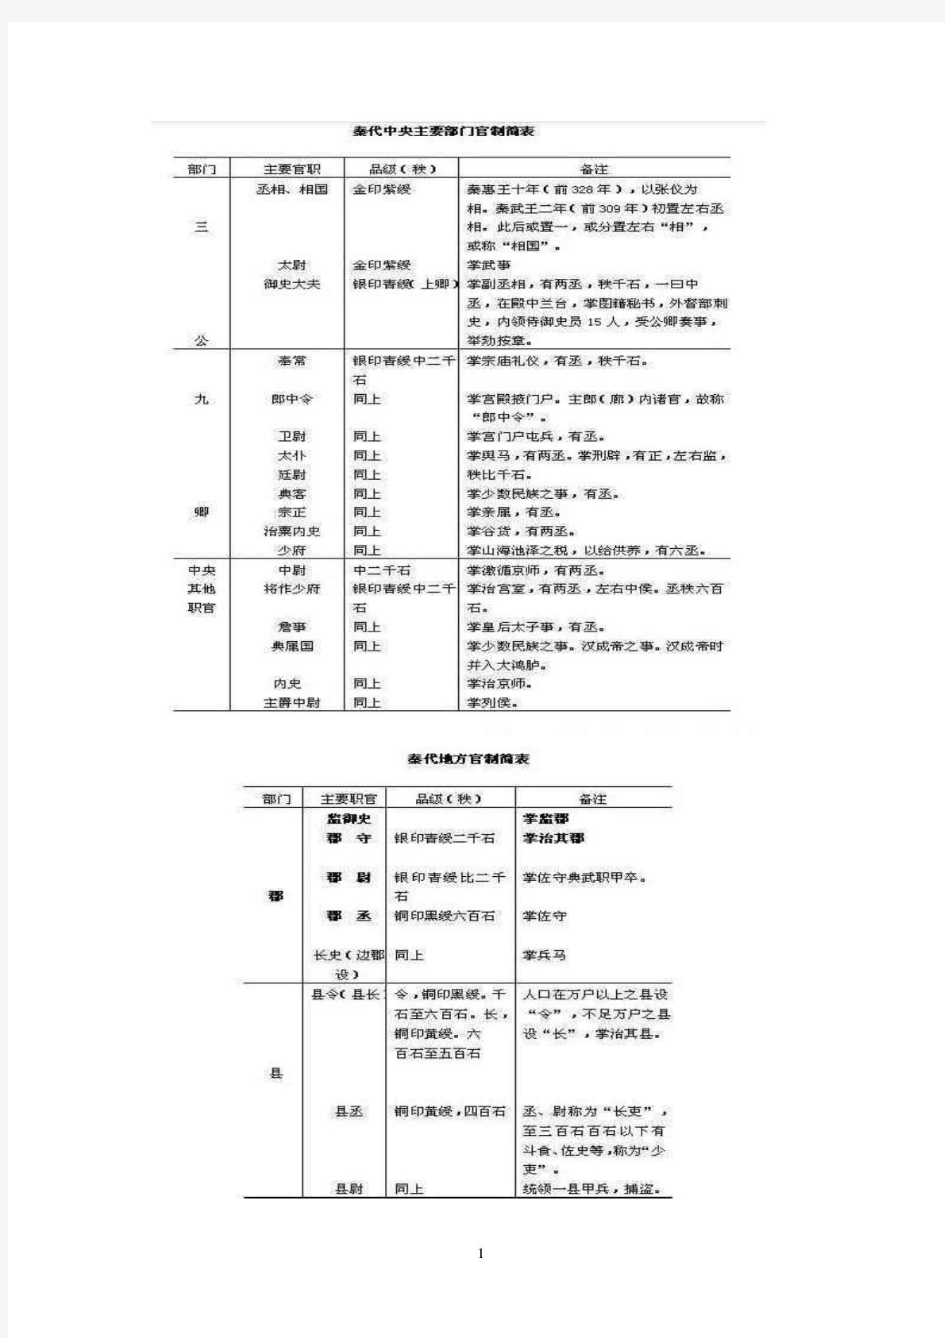 中国历代官制图表集 (1)